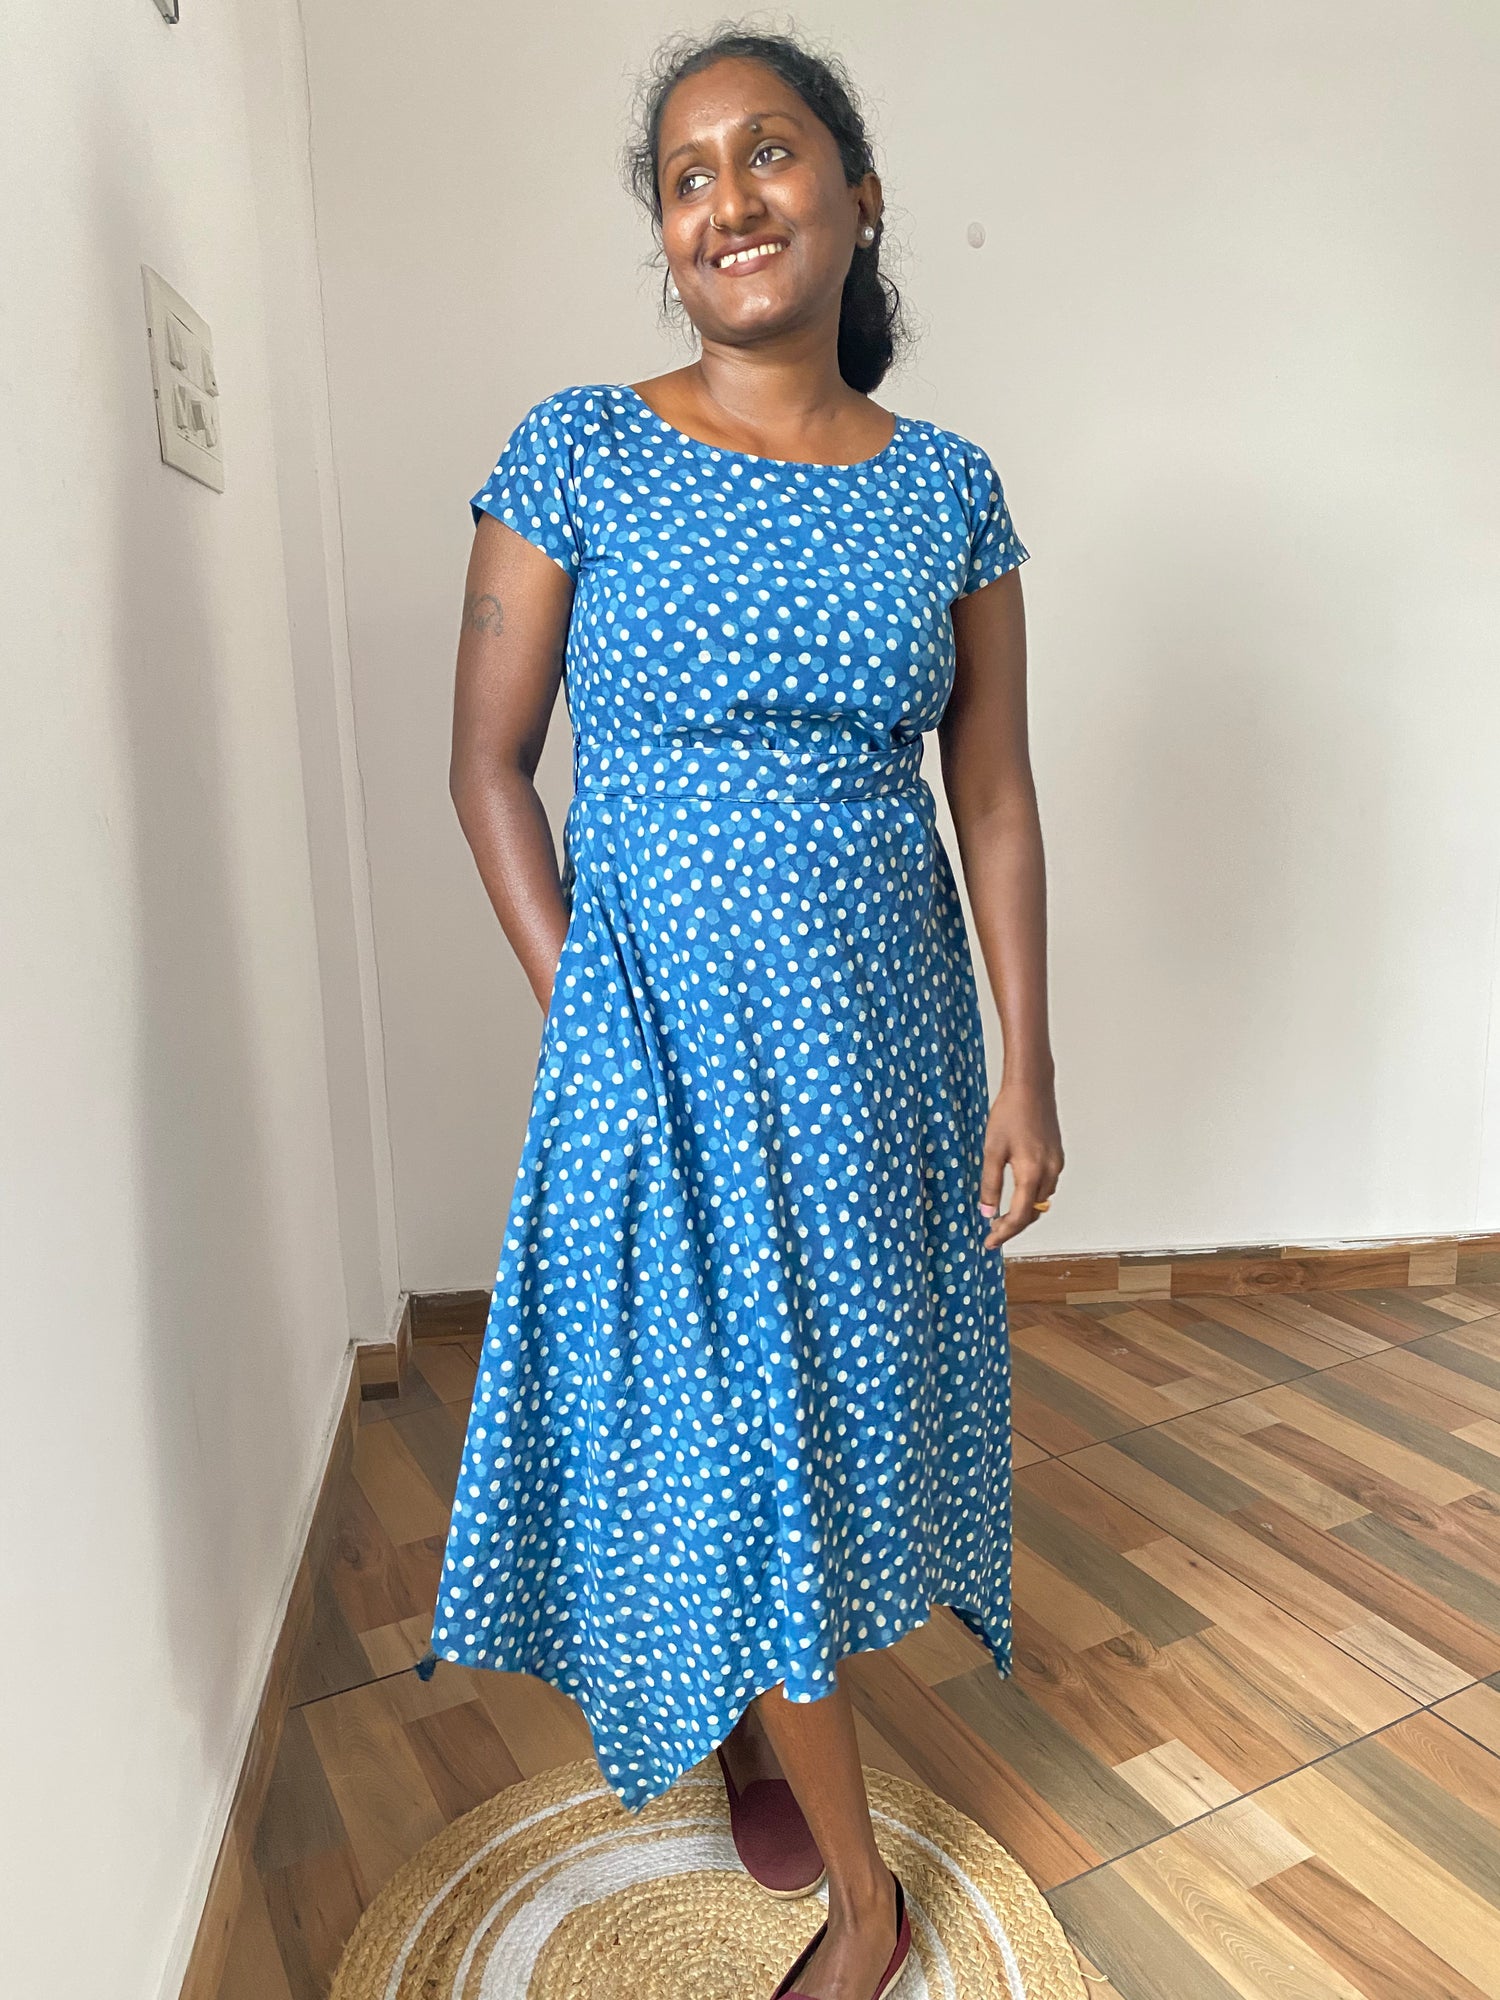 Asymmetrical polka dot dress